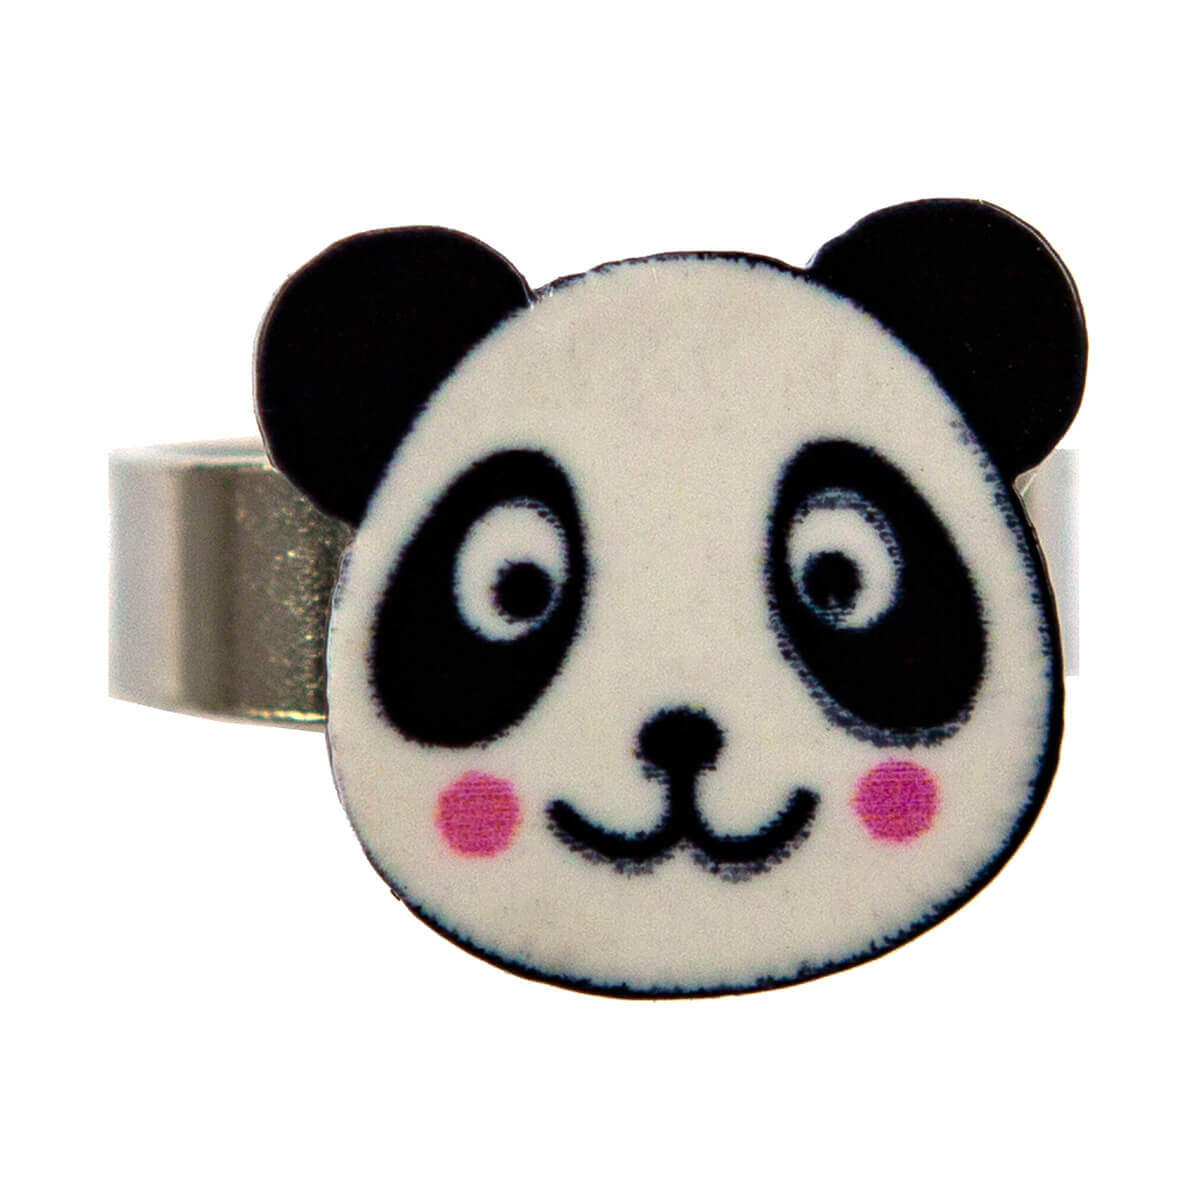 Children's panda ring